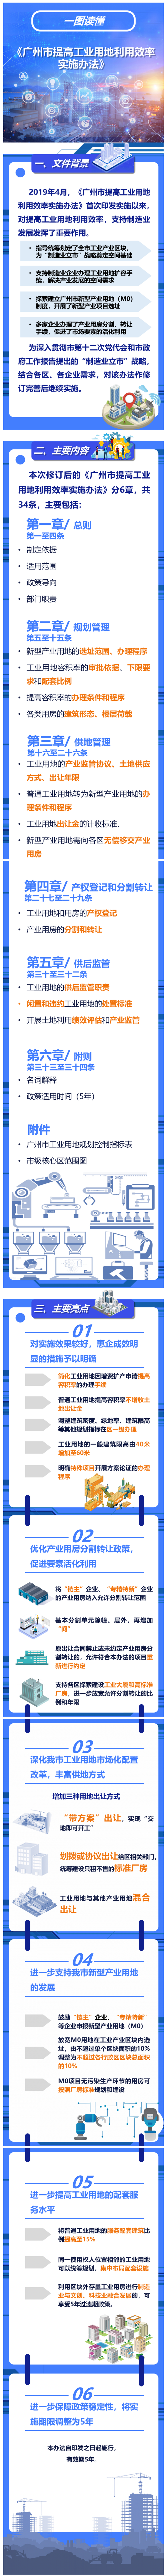 一图读懂《广州市提高工业用地利用效率实施办法》.png